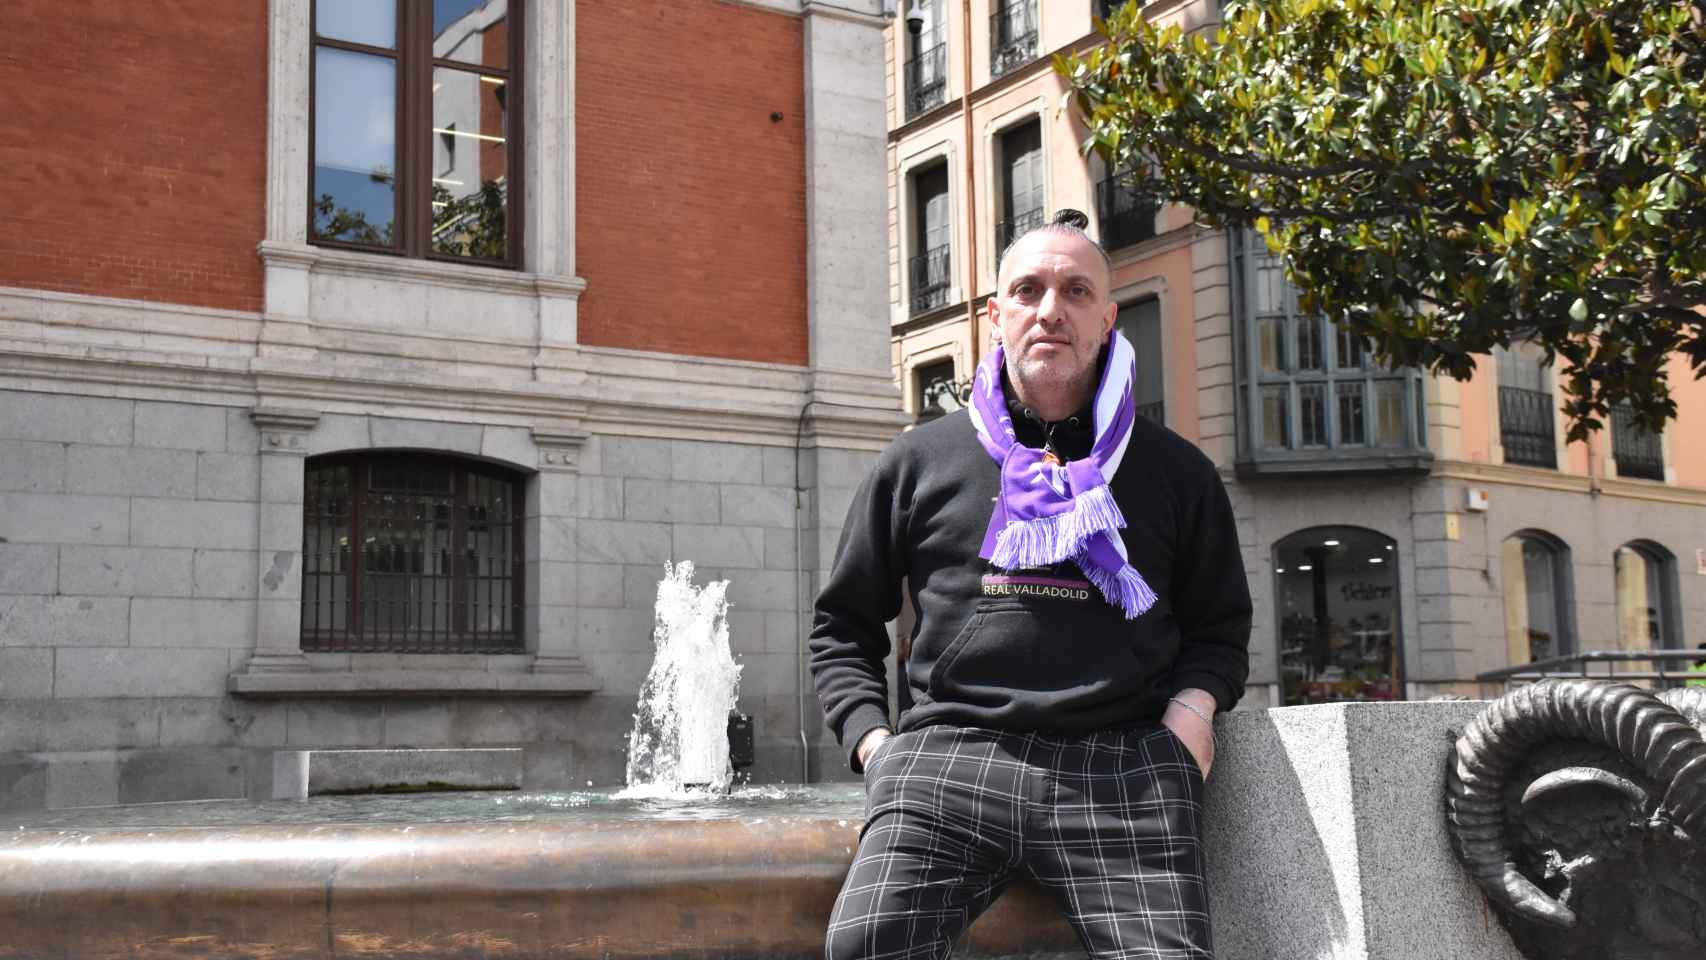 Diego Chiaramoni en la plaza de la Rinconada de Valladolid tras la entrevista con EL ESPAÑOL - Noticias de Castilla y León